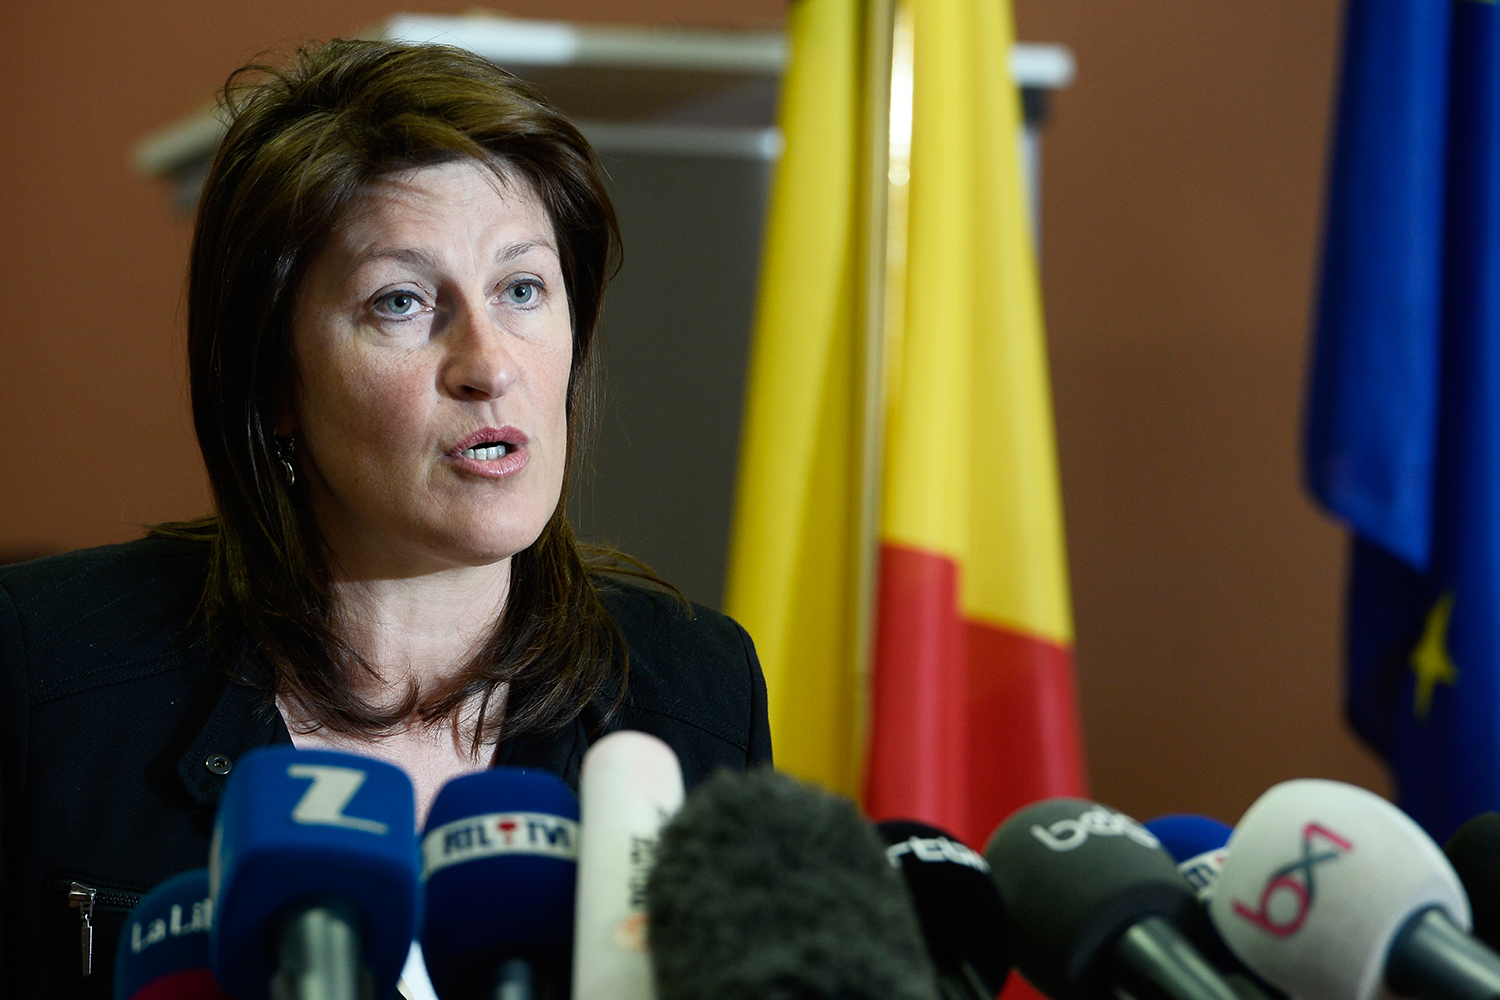 Dimite la ministra de Transporte belga por ignorar fallos de seguridad en el aeropuerto